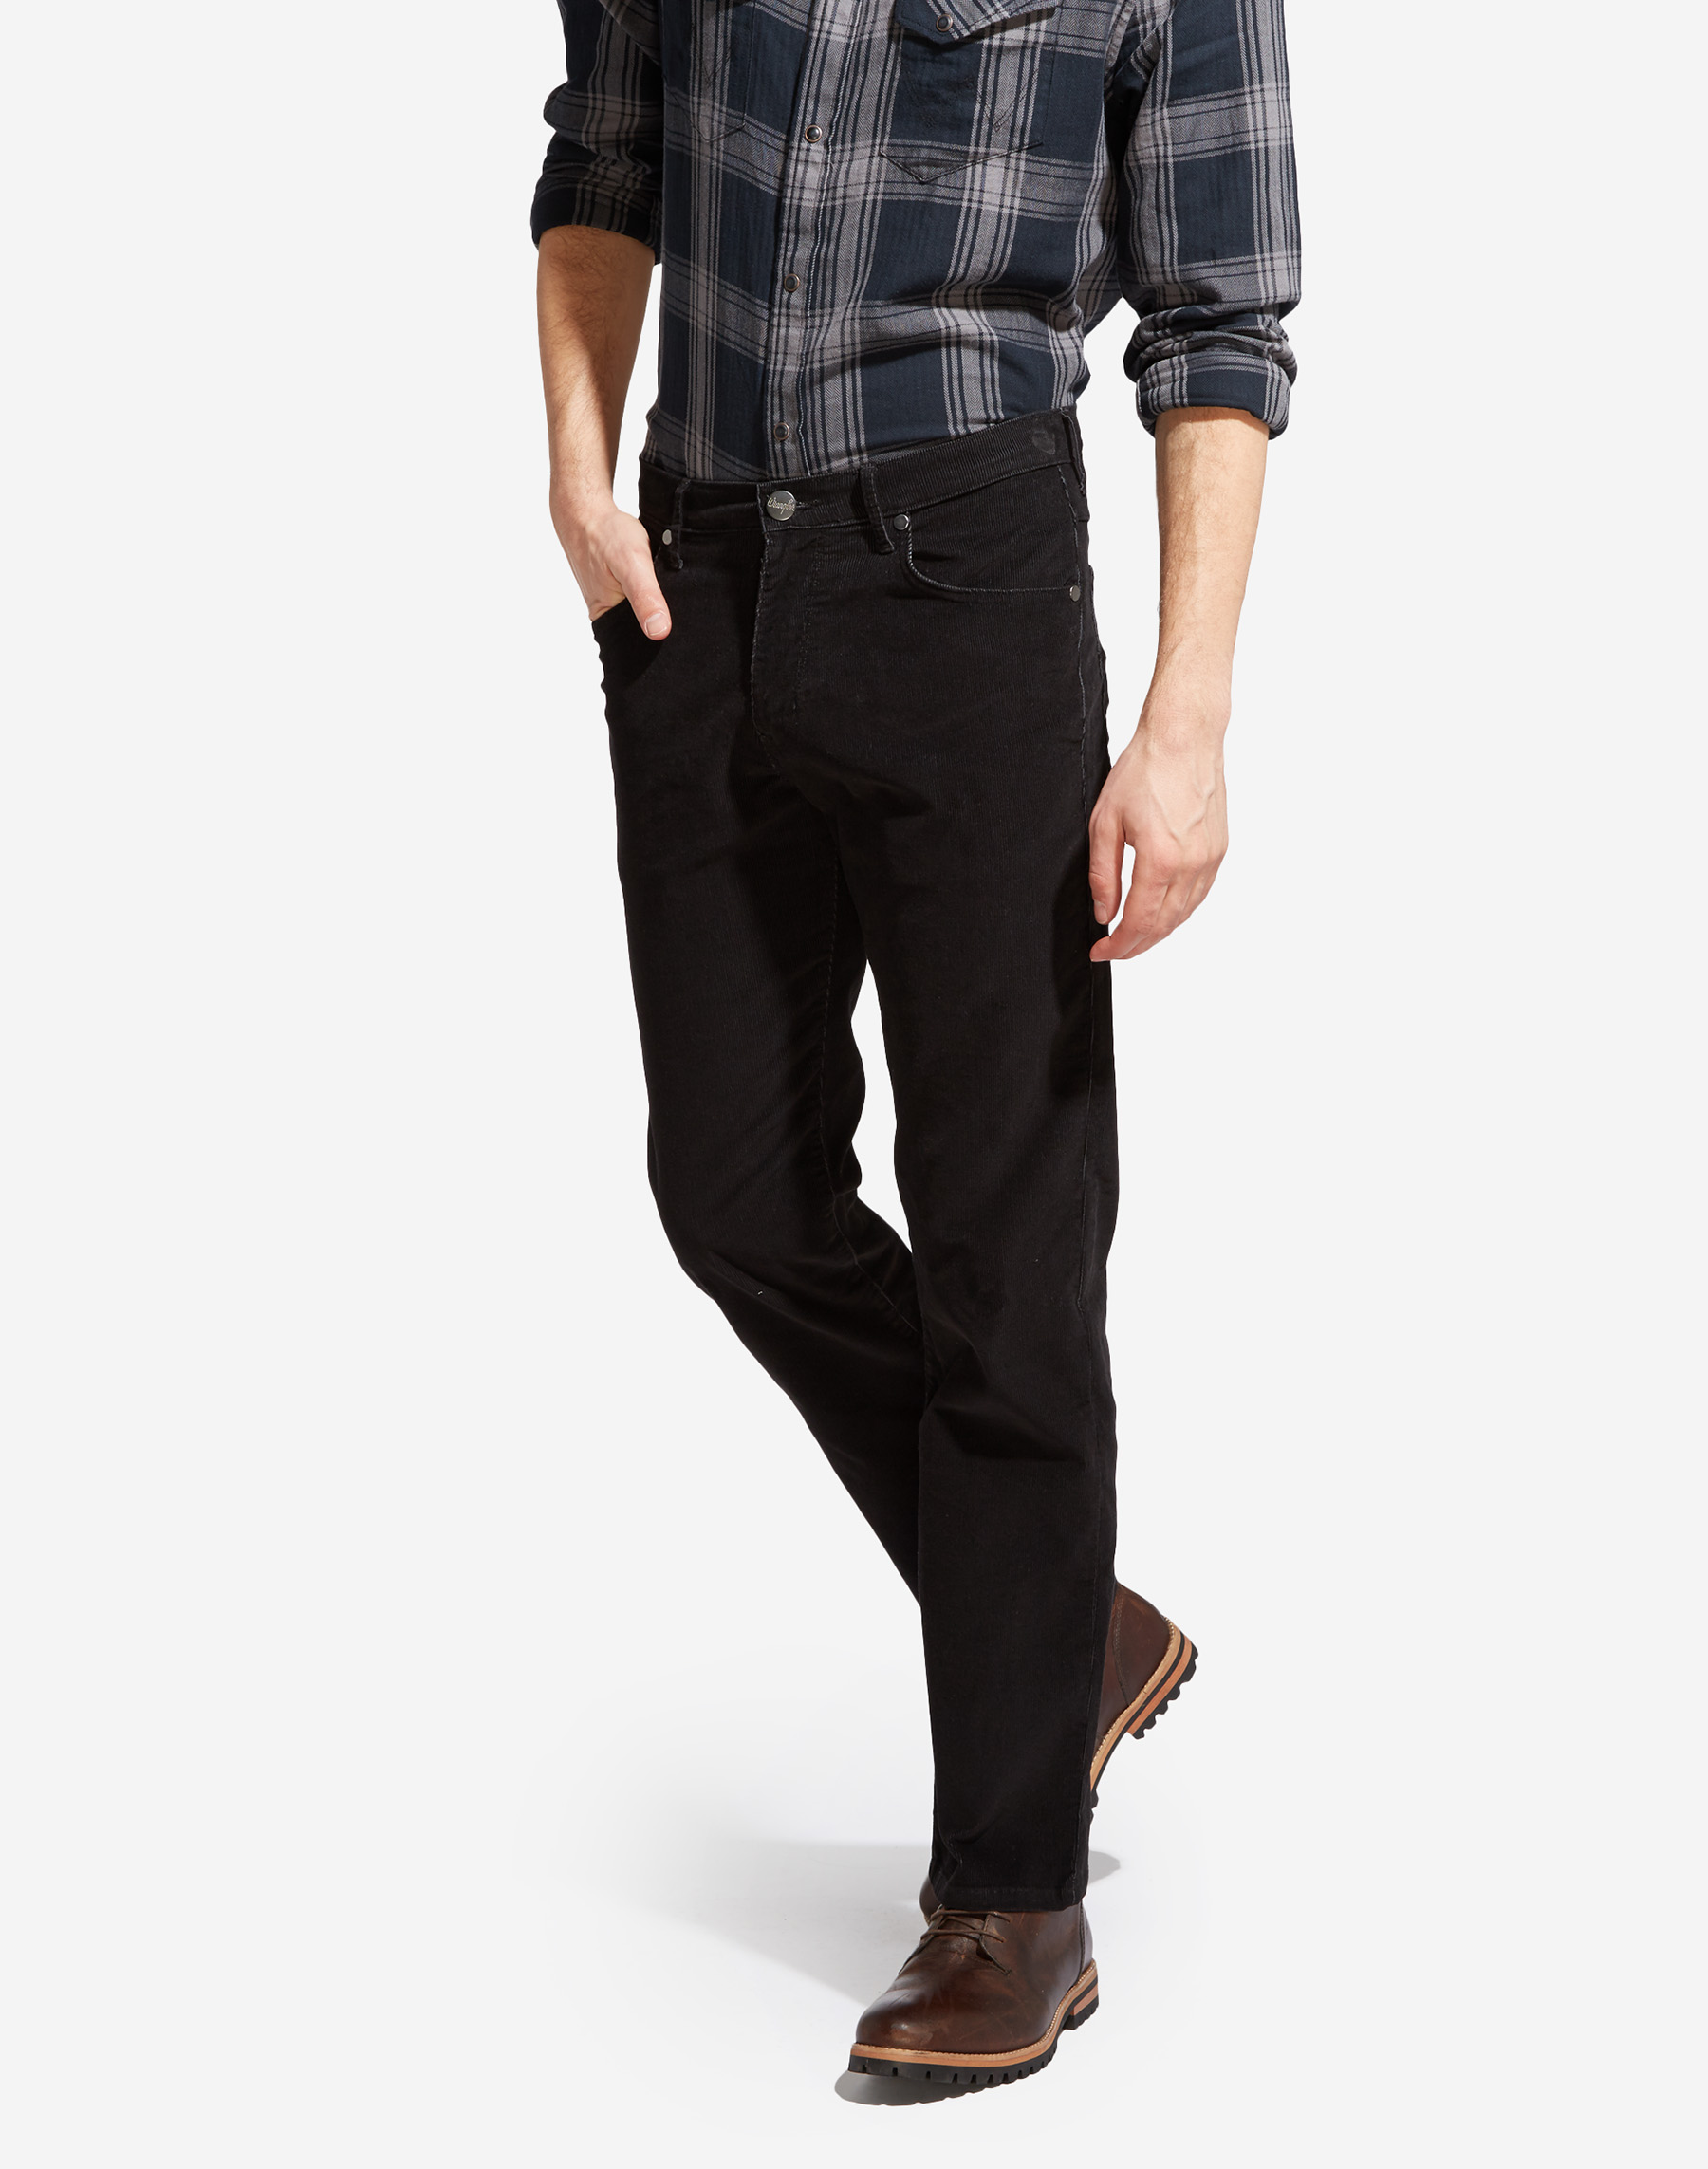 Wrangler Arizona regular pantalons texans de pana d'home W12OEC100 negre